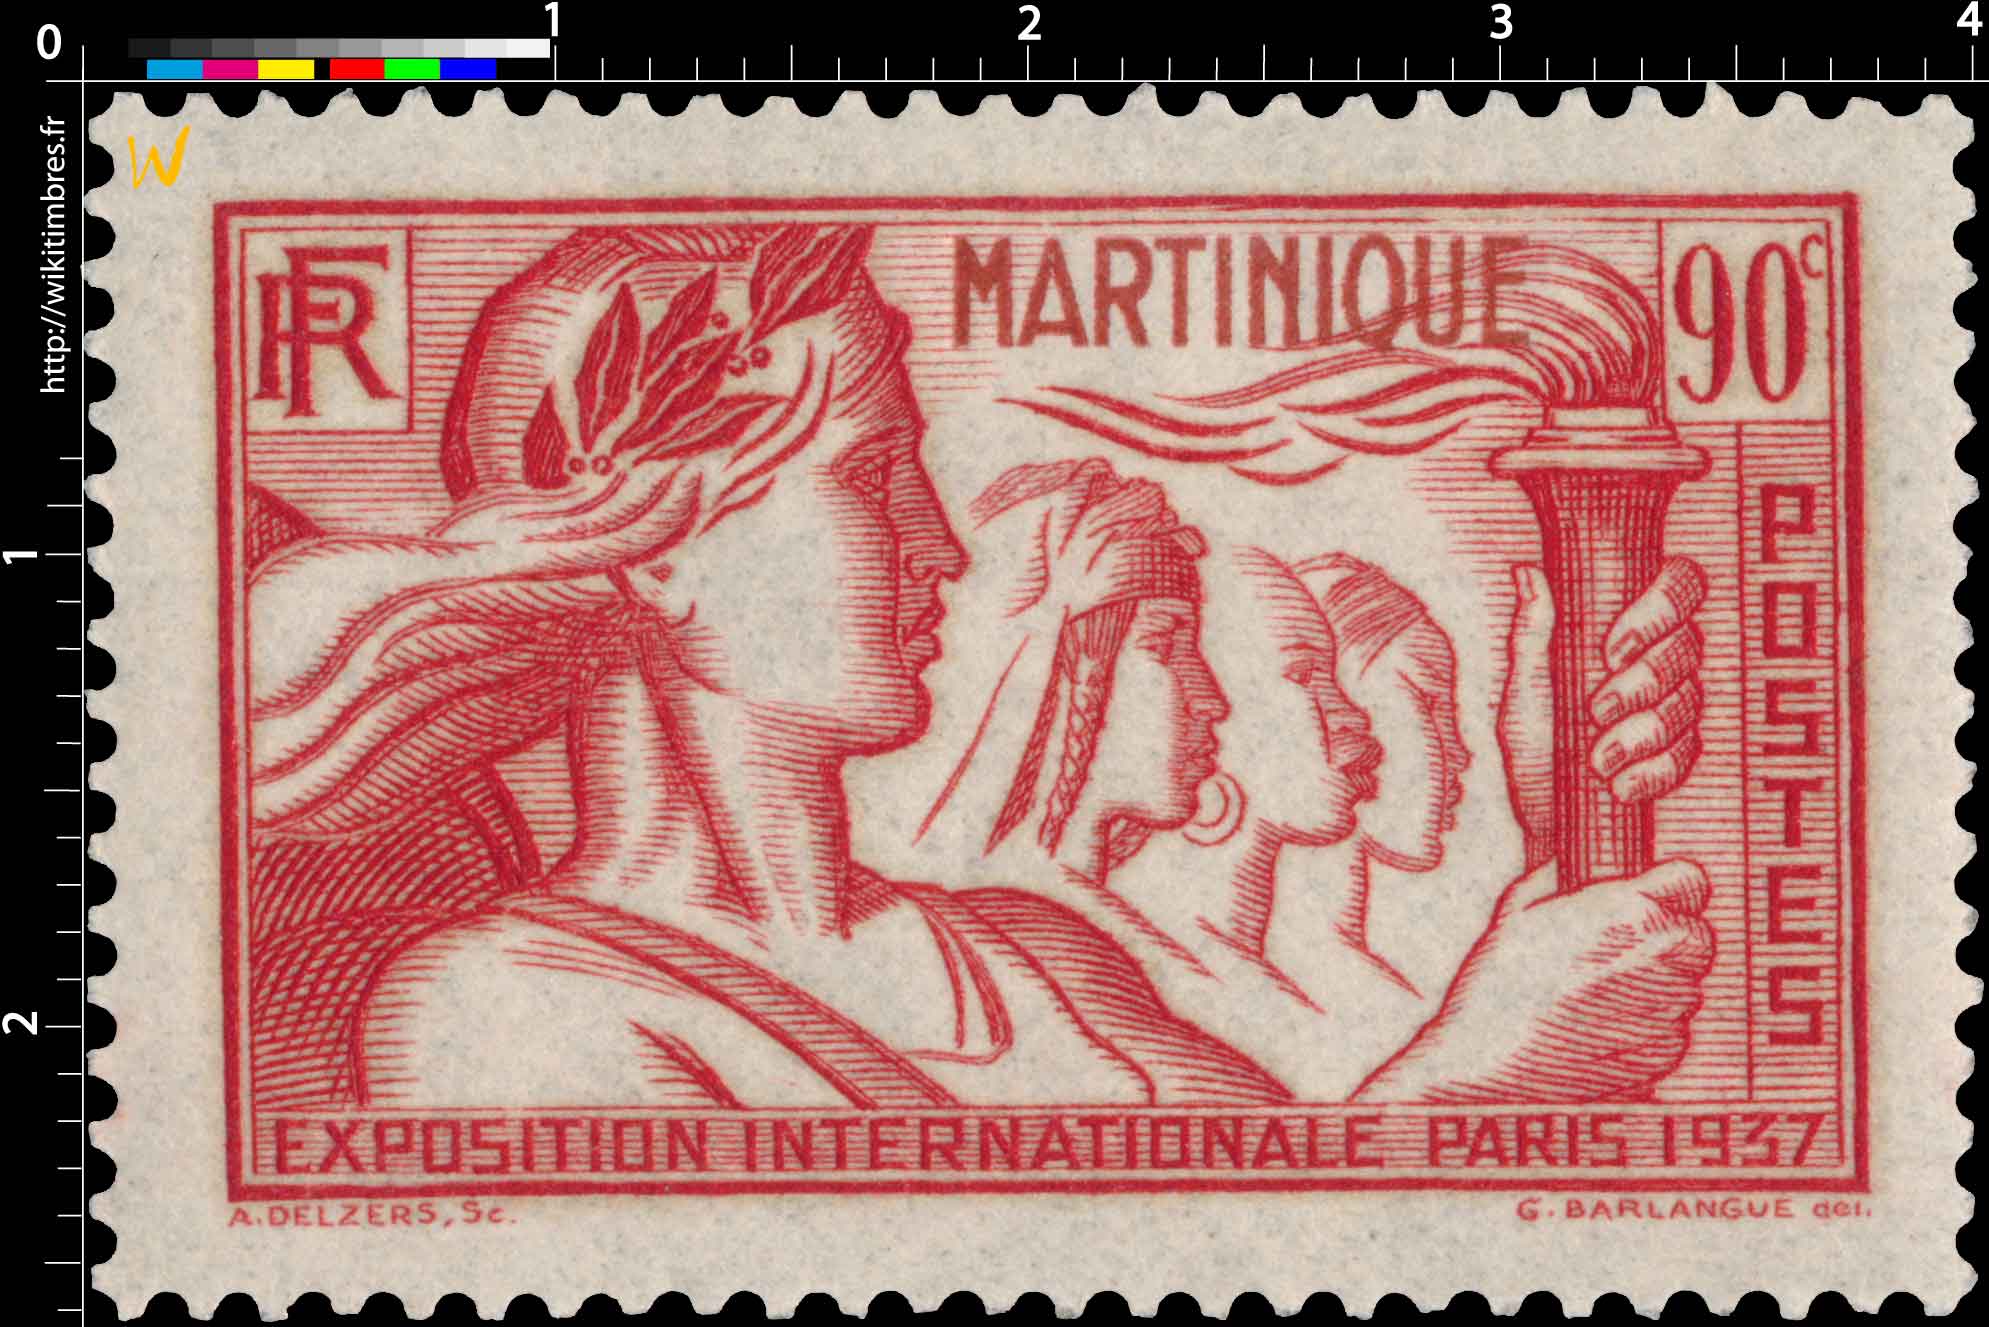 Martinique - Exposition internationale Paris 1937